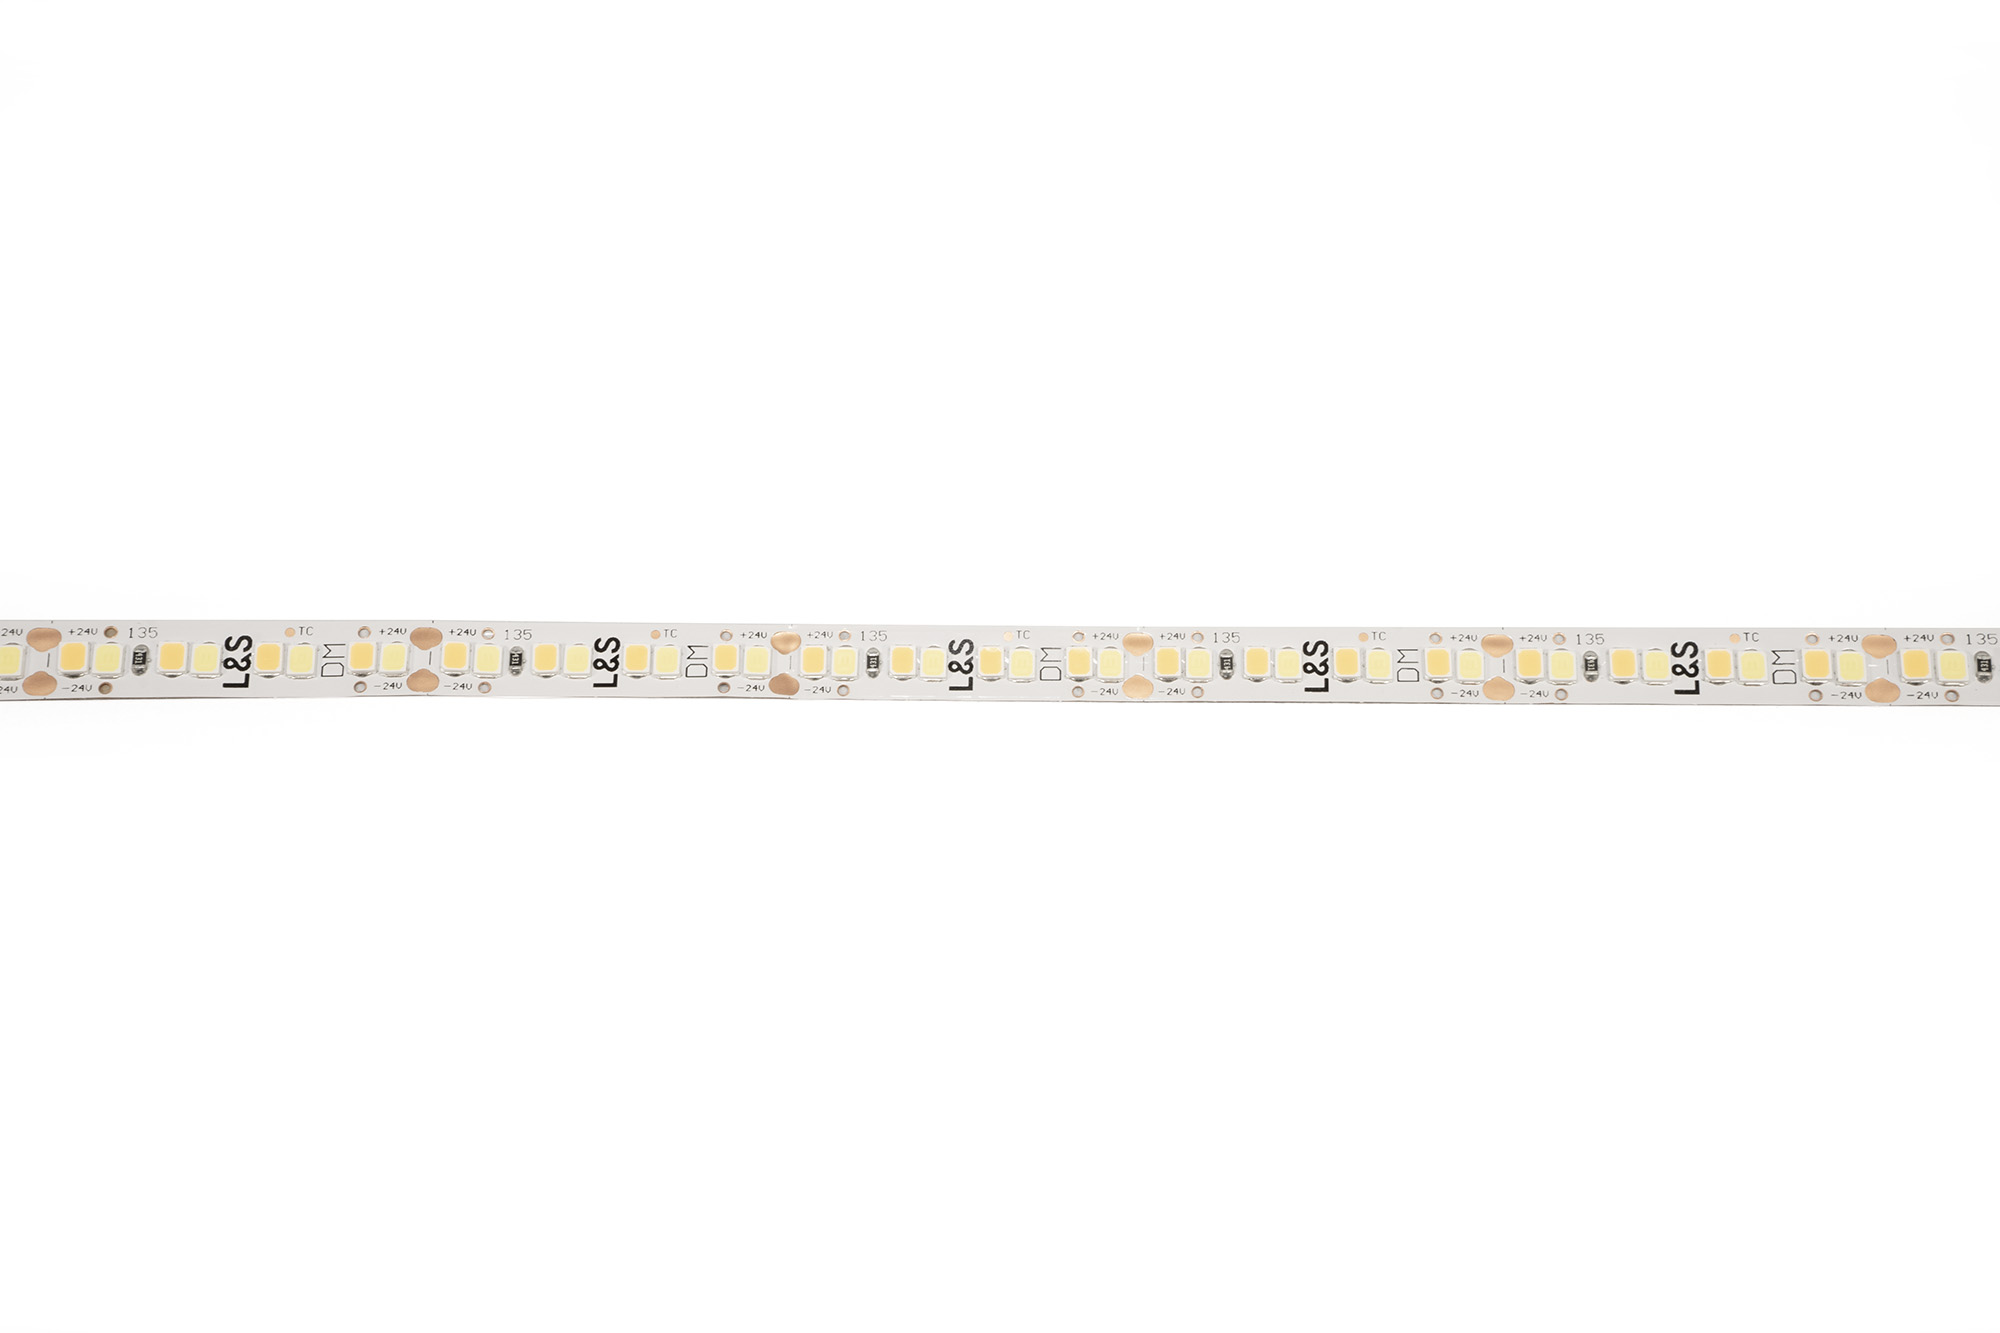 L&S LED-Band HE 112+112LEDs/m (2835), 2700-6500K, 4+4LEDs/35,7mm, 24DC, 9,8W/m, 8mmx321mm, mit 1x. Anschlussltg. 200mm, white PCB, IP20,